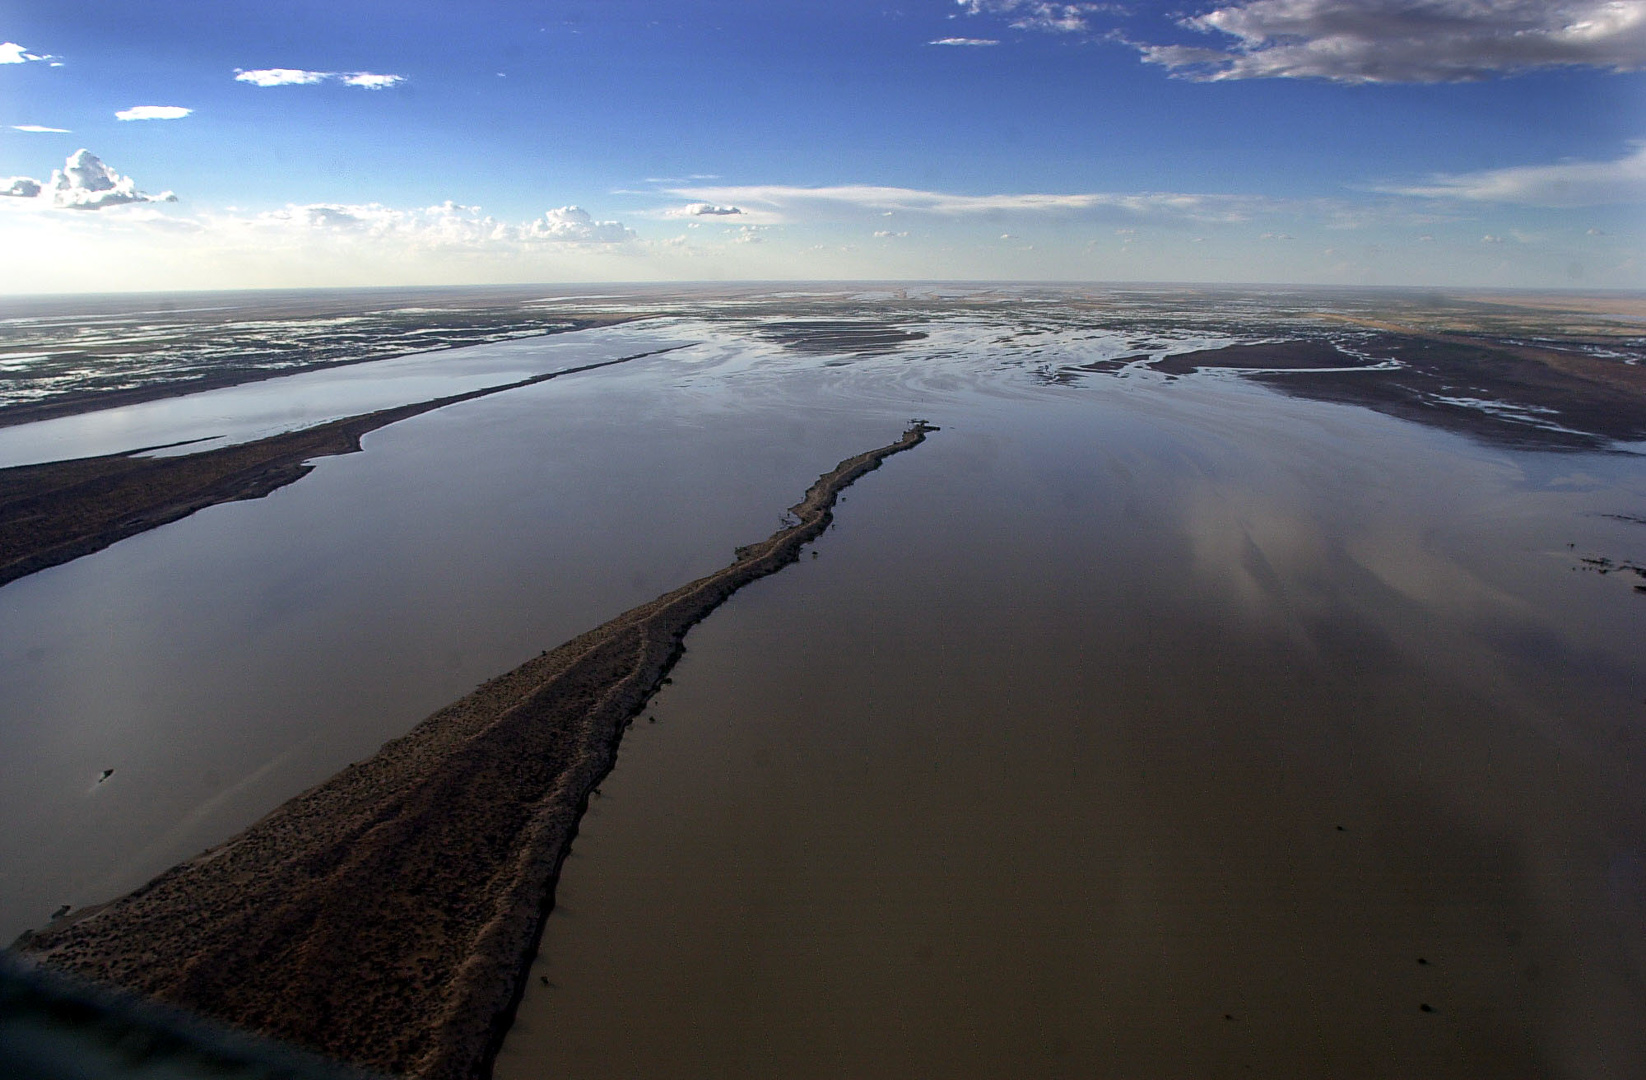 Simpson desert in flood. Feb 2004